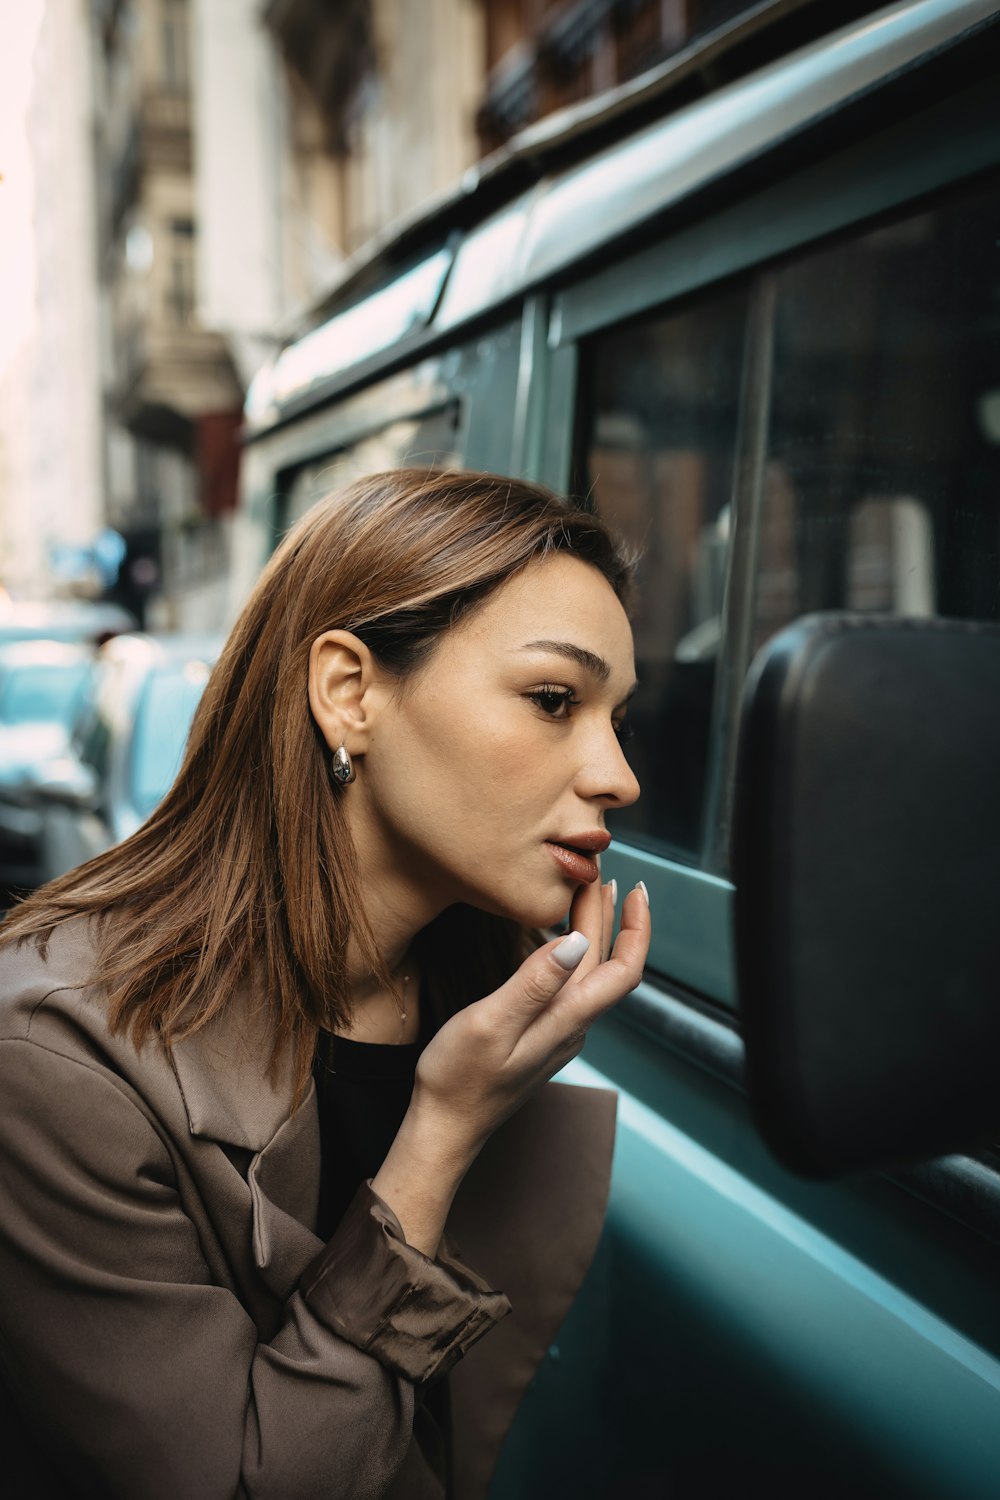 a woman smoking a cigarette next to a car